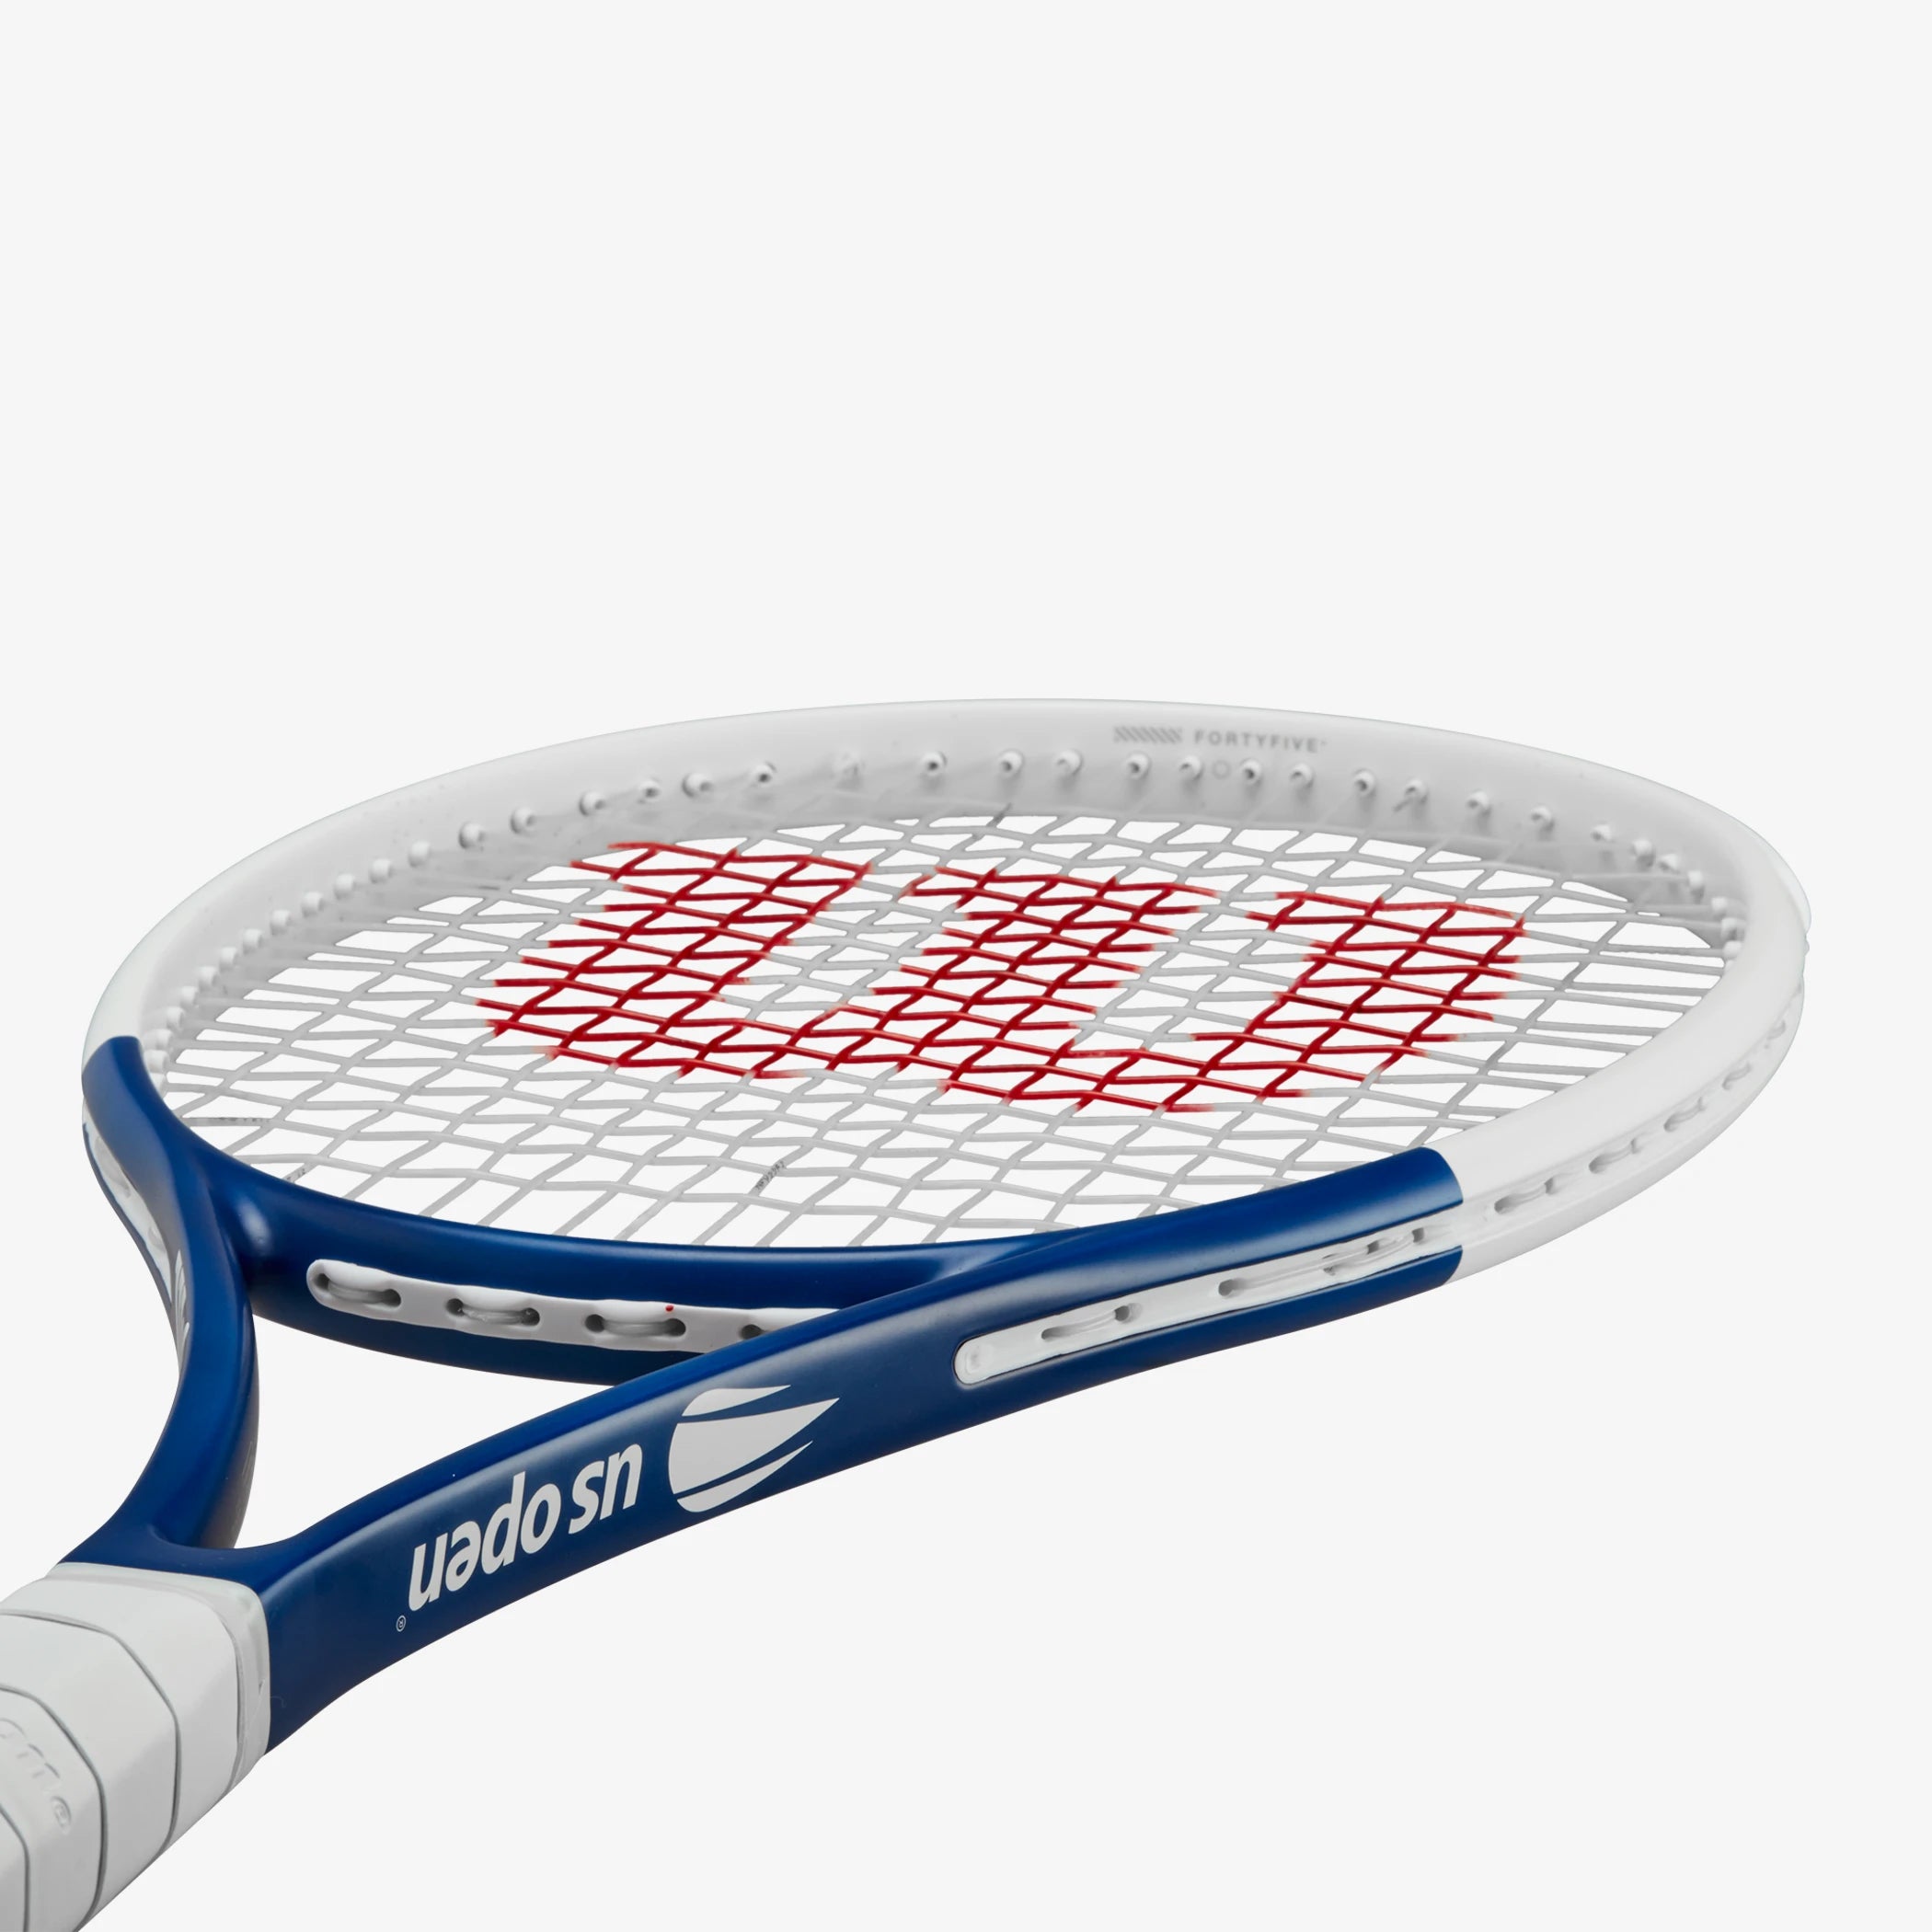 Deluxe Tennis Post Reel, Racquet String -  Canada